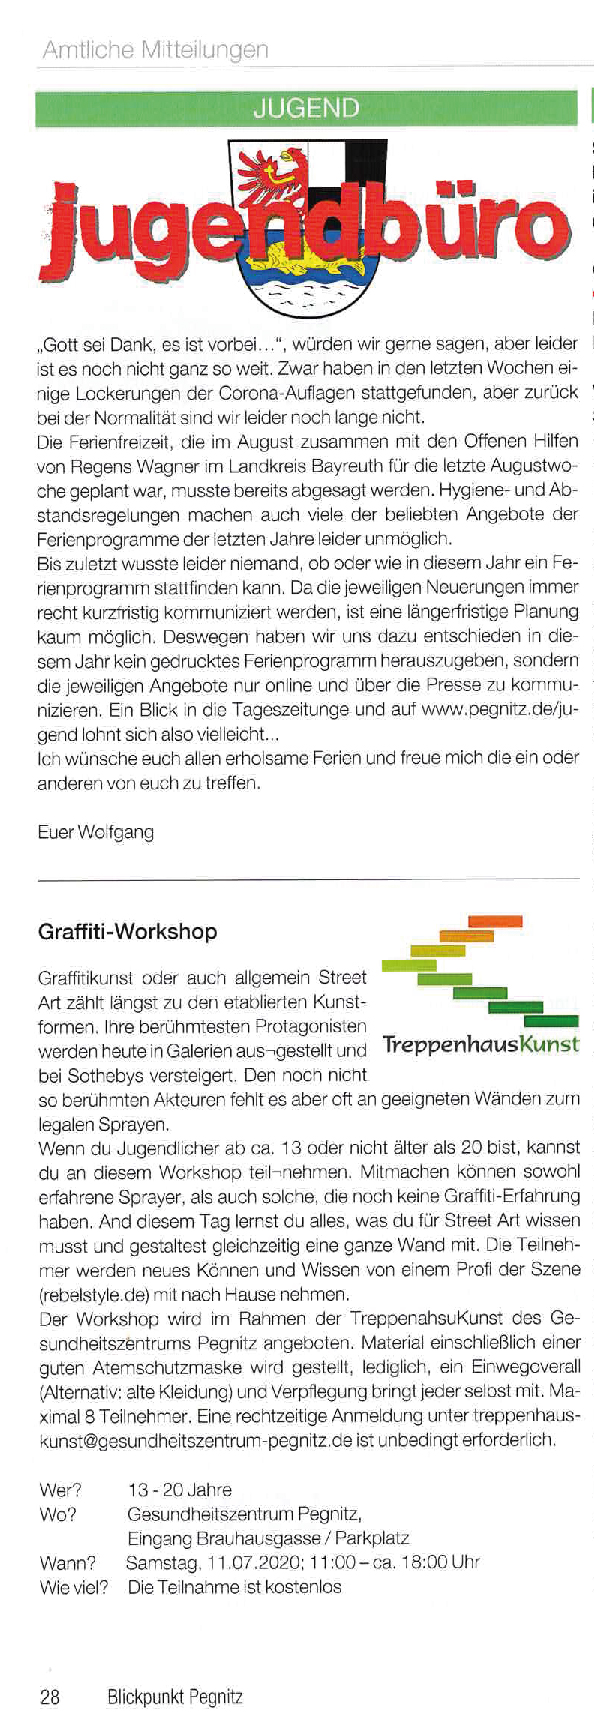 Graffiti-Workshop – Blickpunkt Pegnitz – Juli 2020